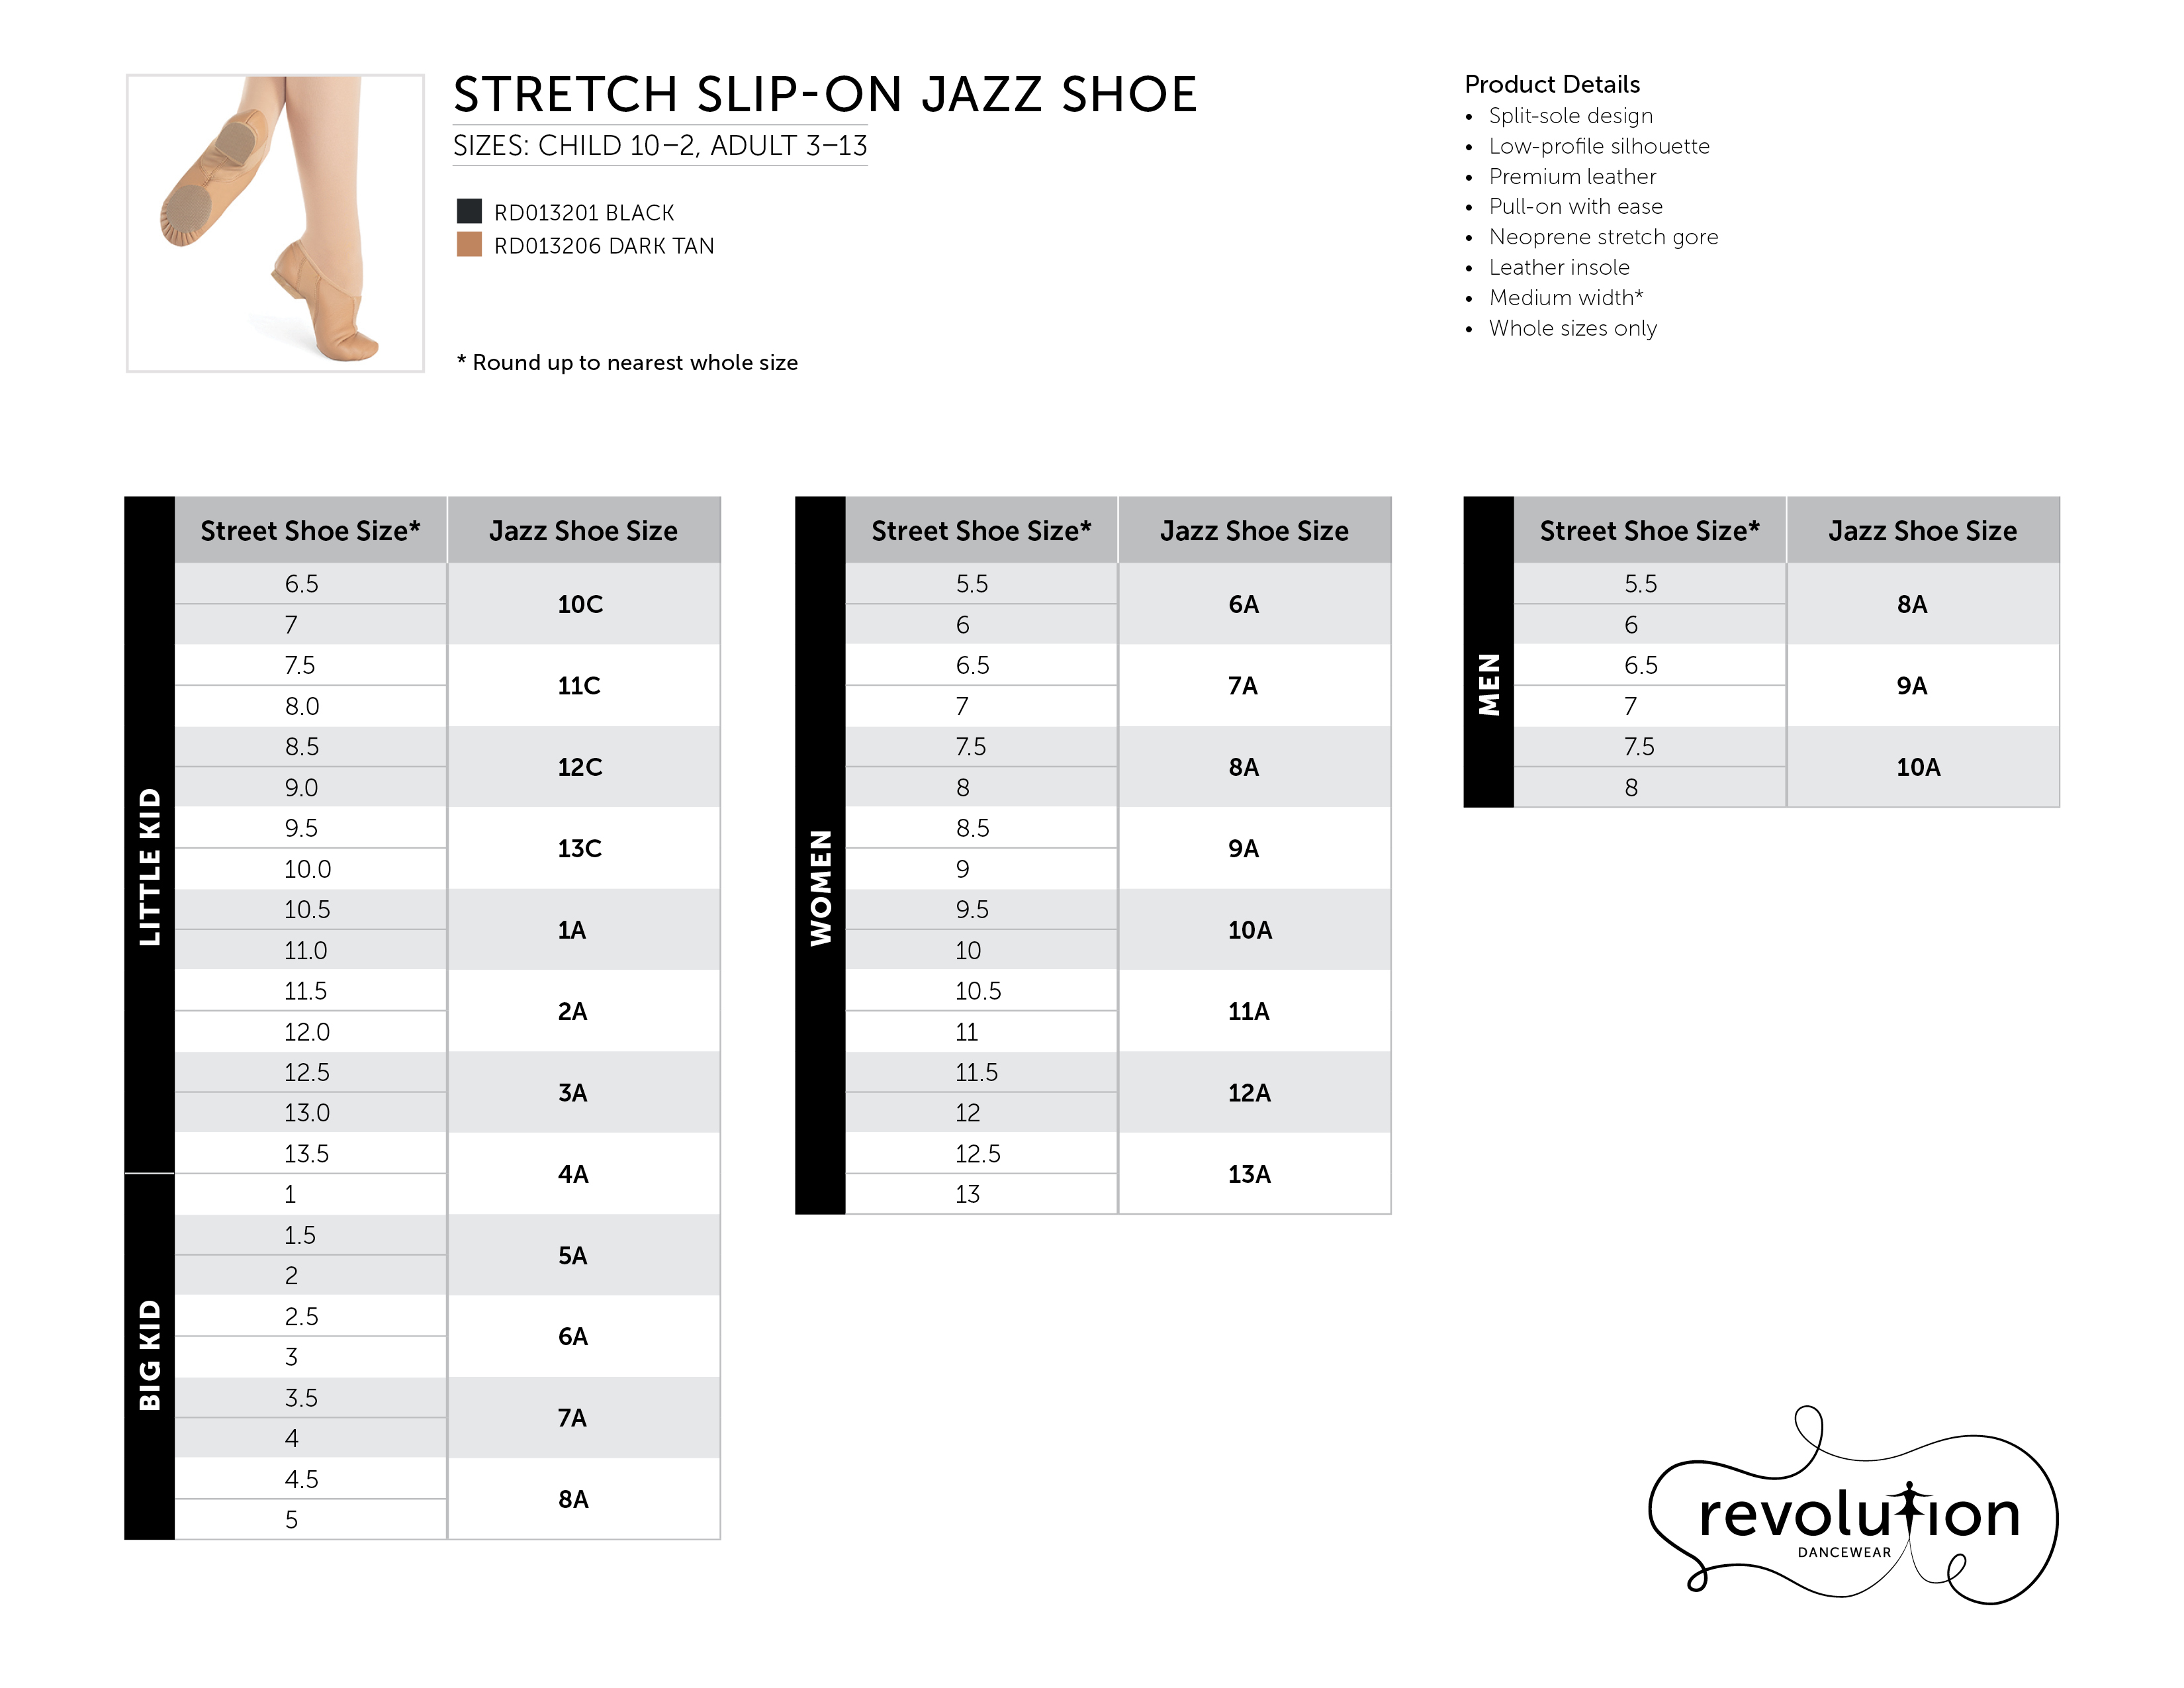 Stretch Slip-On Jazz Shoe Sizing Kit